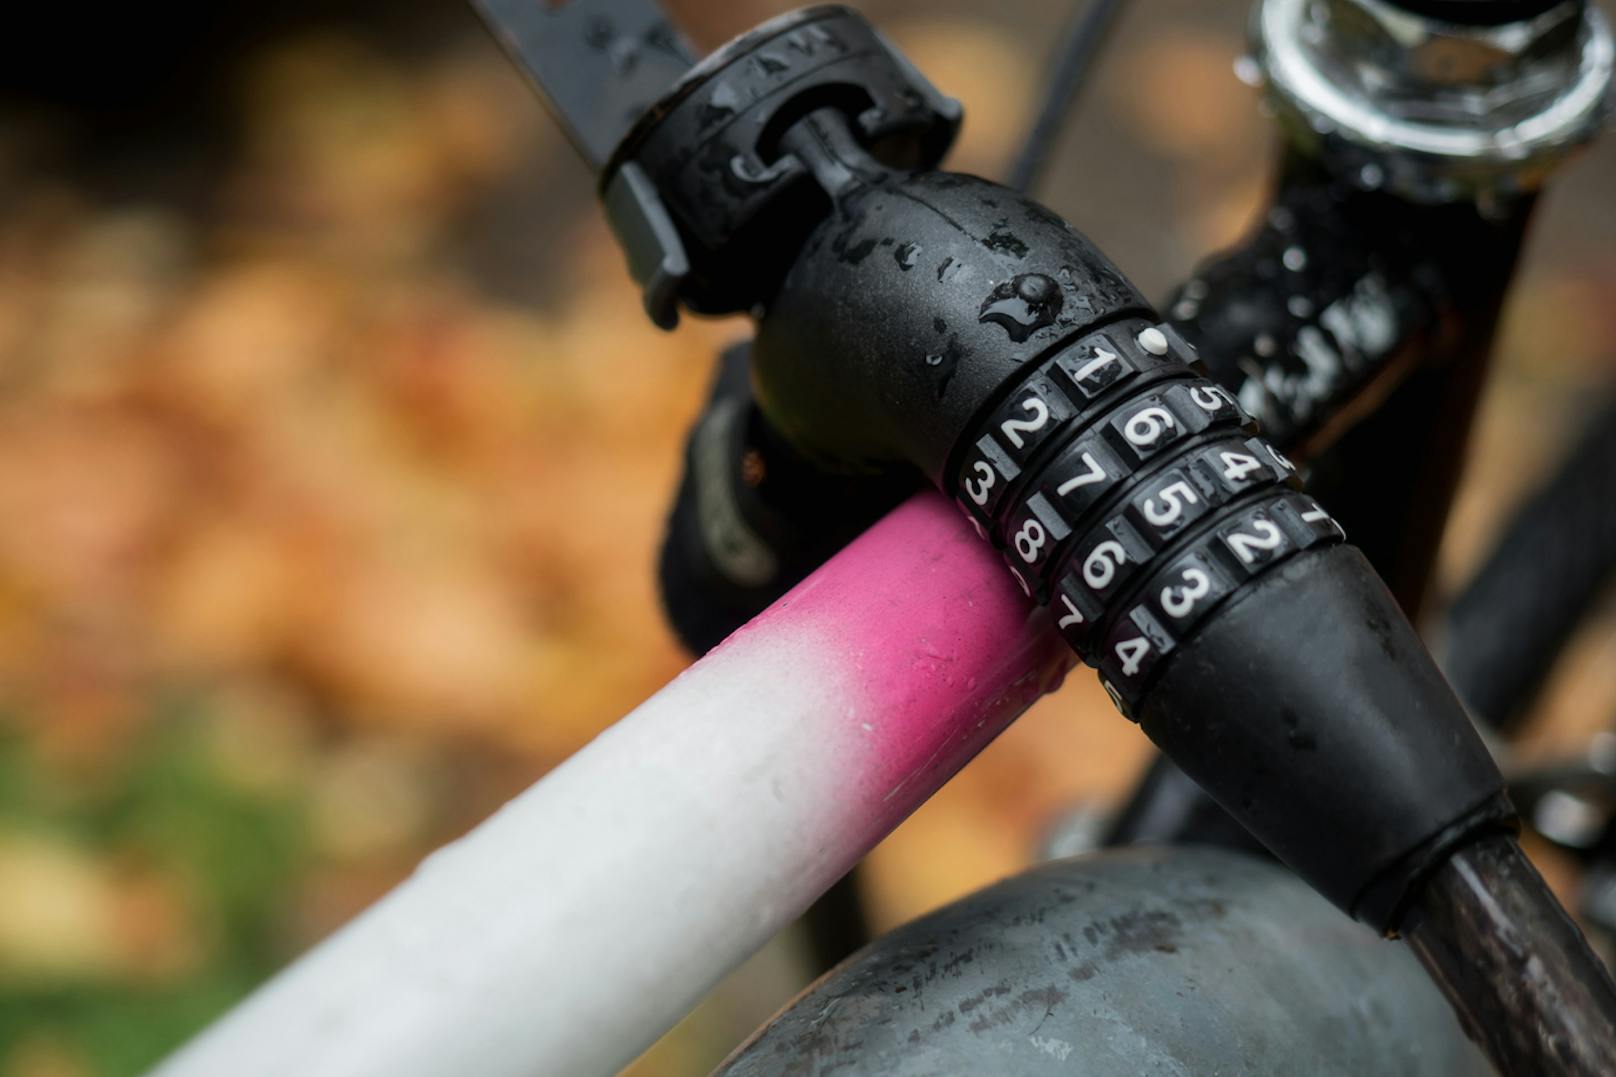 Der Linzer stahl ein rosa Damenrad, weil er bei den anderen Fahrrädern die Schlösser nicht knacken konnte.